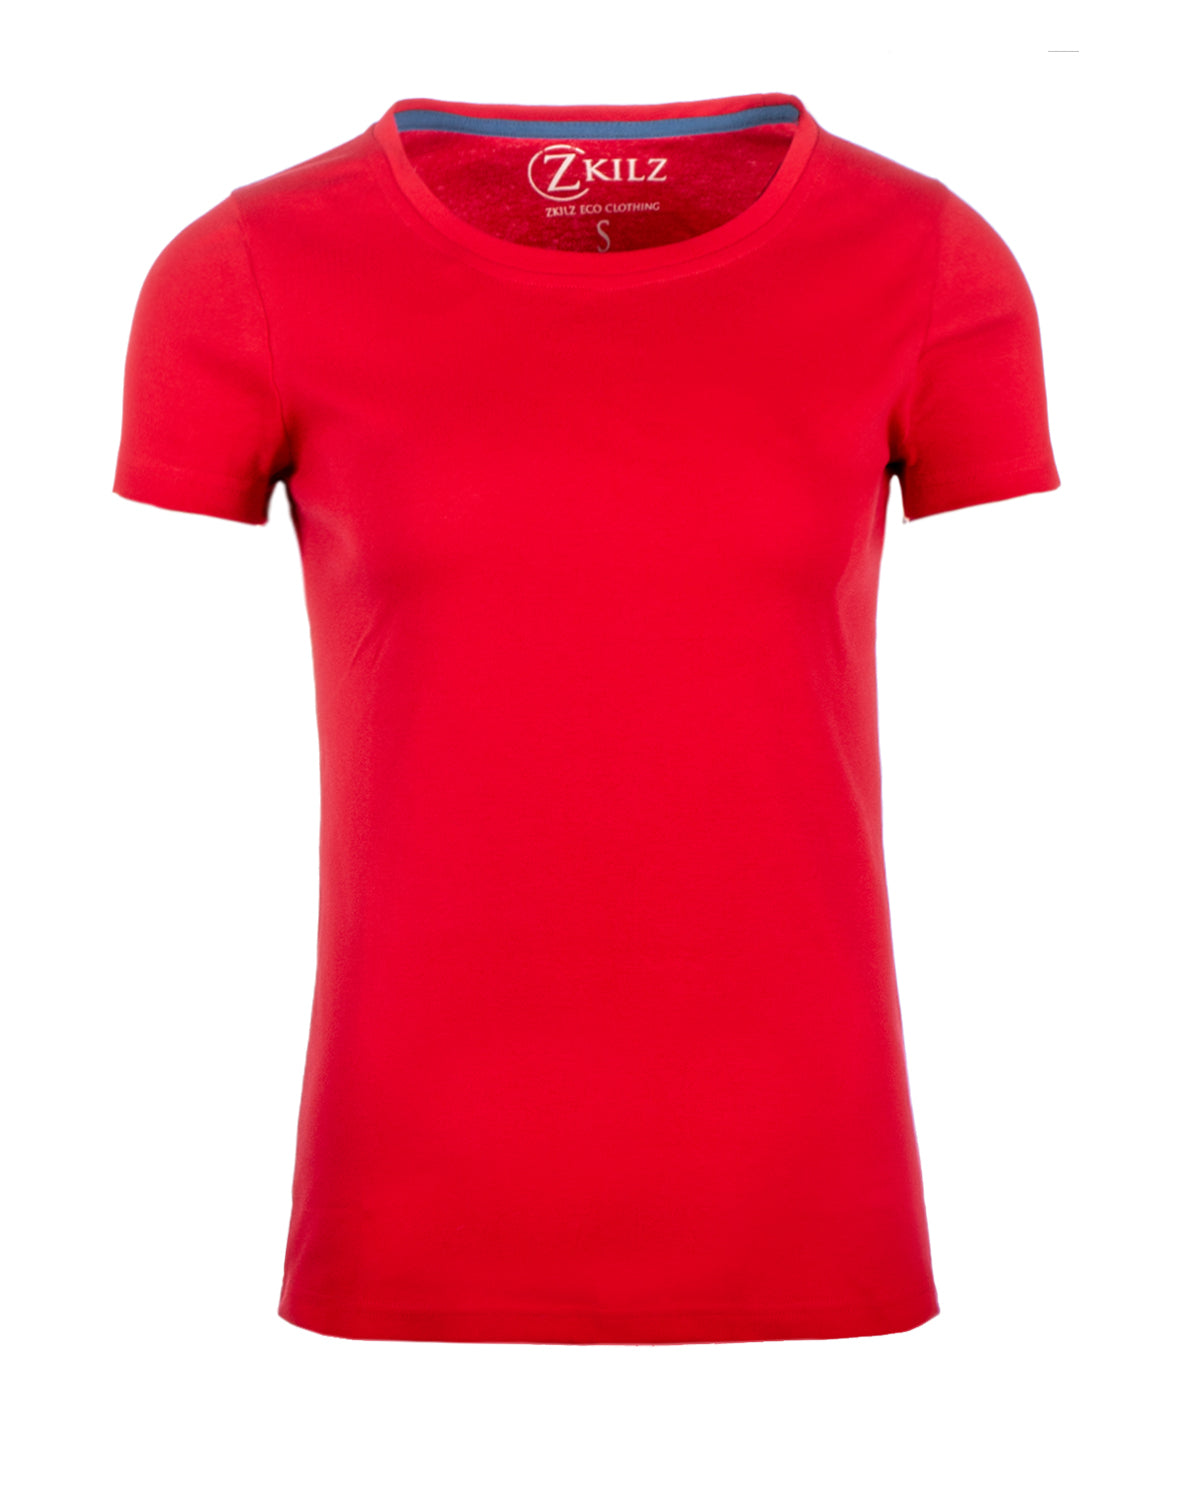 Zkilz Eco Clothing Luomupuuvilla w t-paita - Punainen